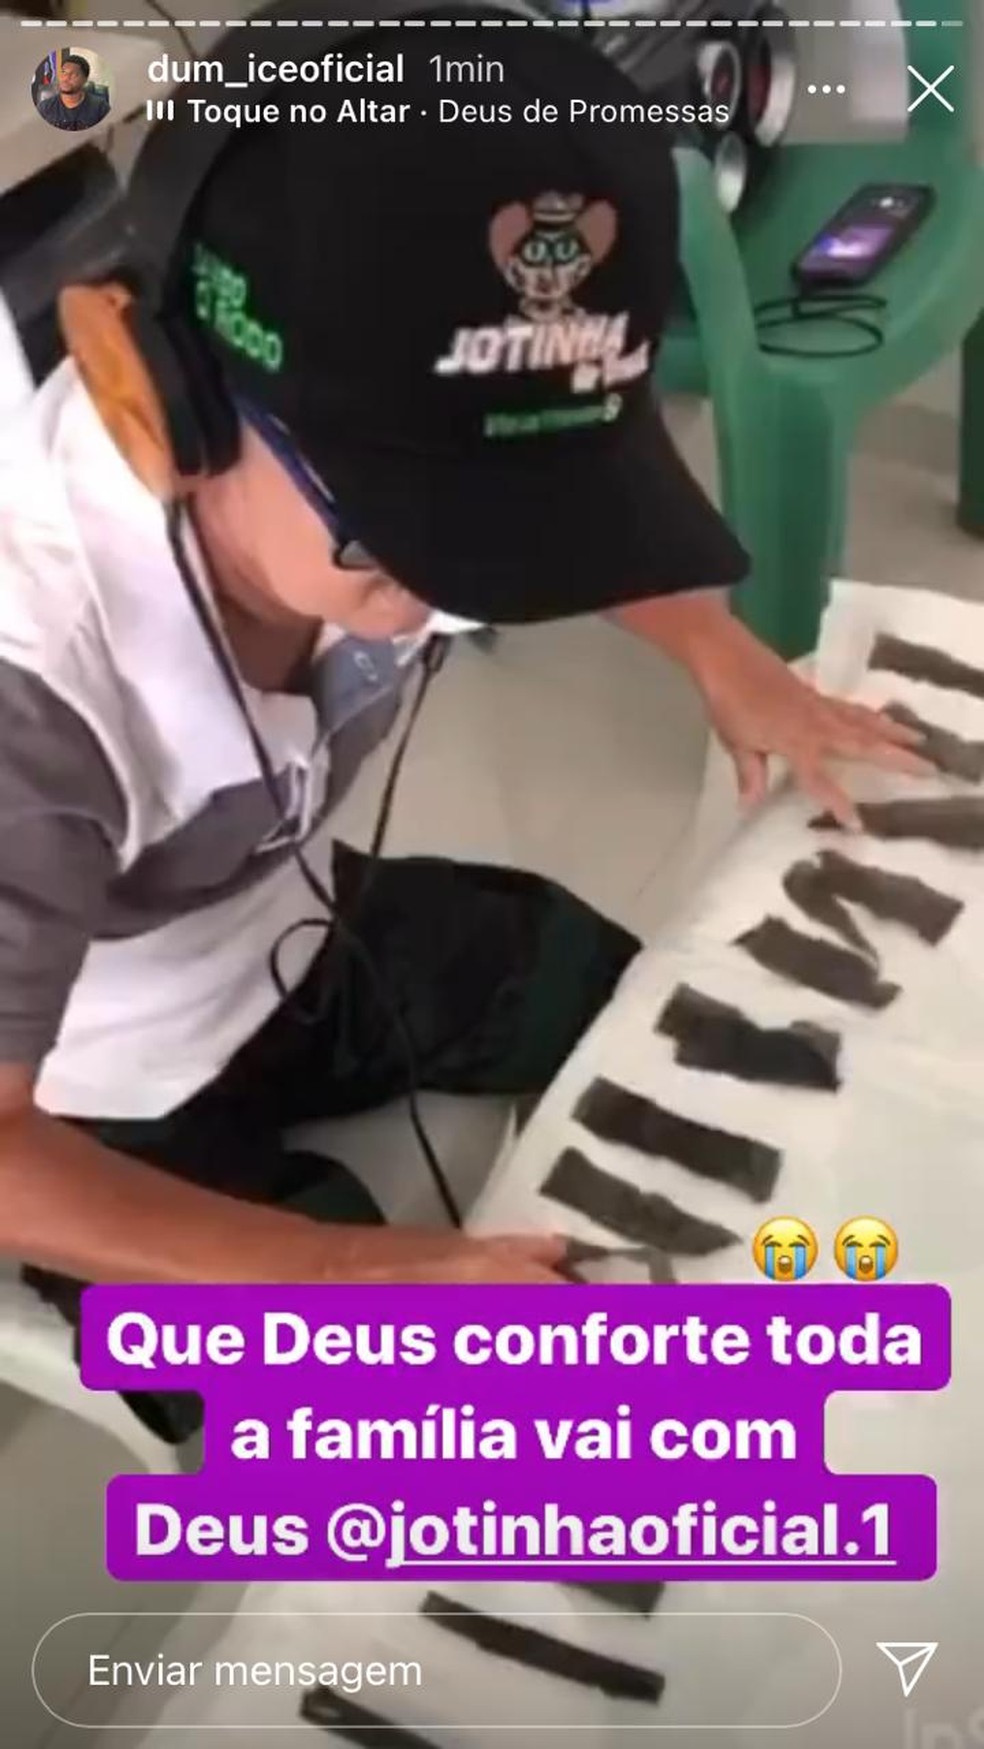 Dum Ice também fez um storie no Instagram lamentando a morte de Jotinha — Foto: Reprodução/Redes sociais